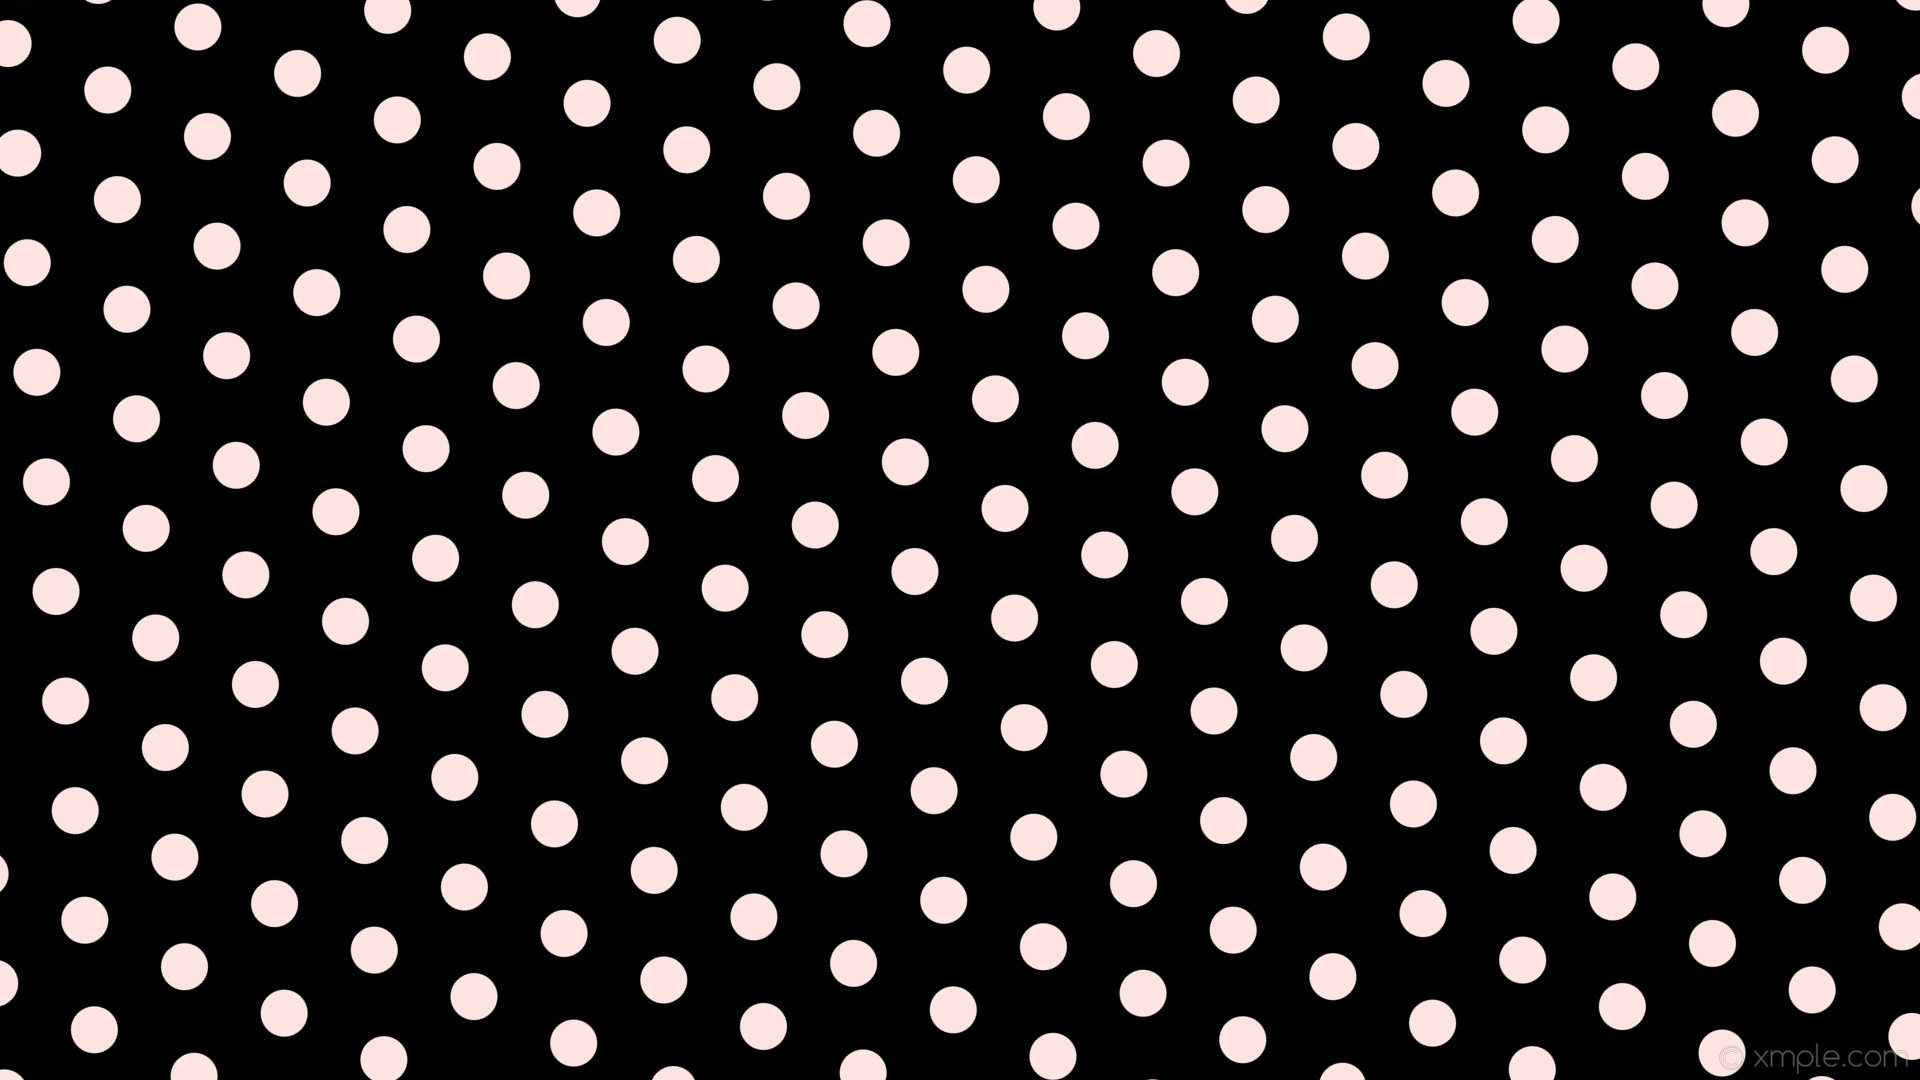 1920x1080 wallpaper white hexagon black polka dots misty rose #000000 #ffe4e1  diagonal 35Â° 47px